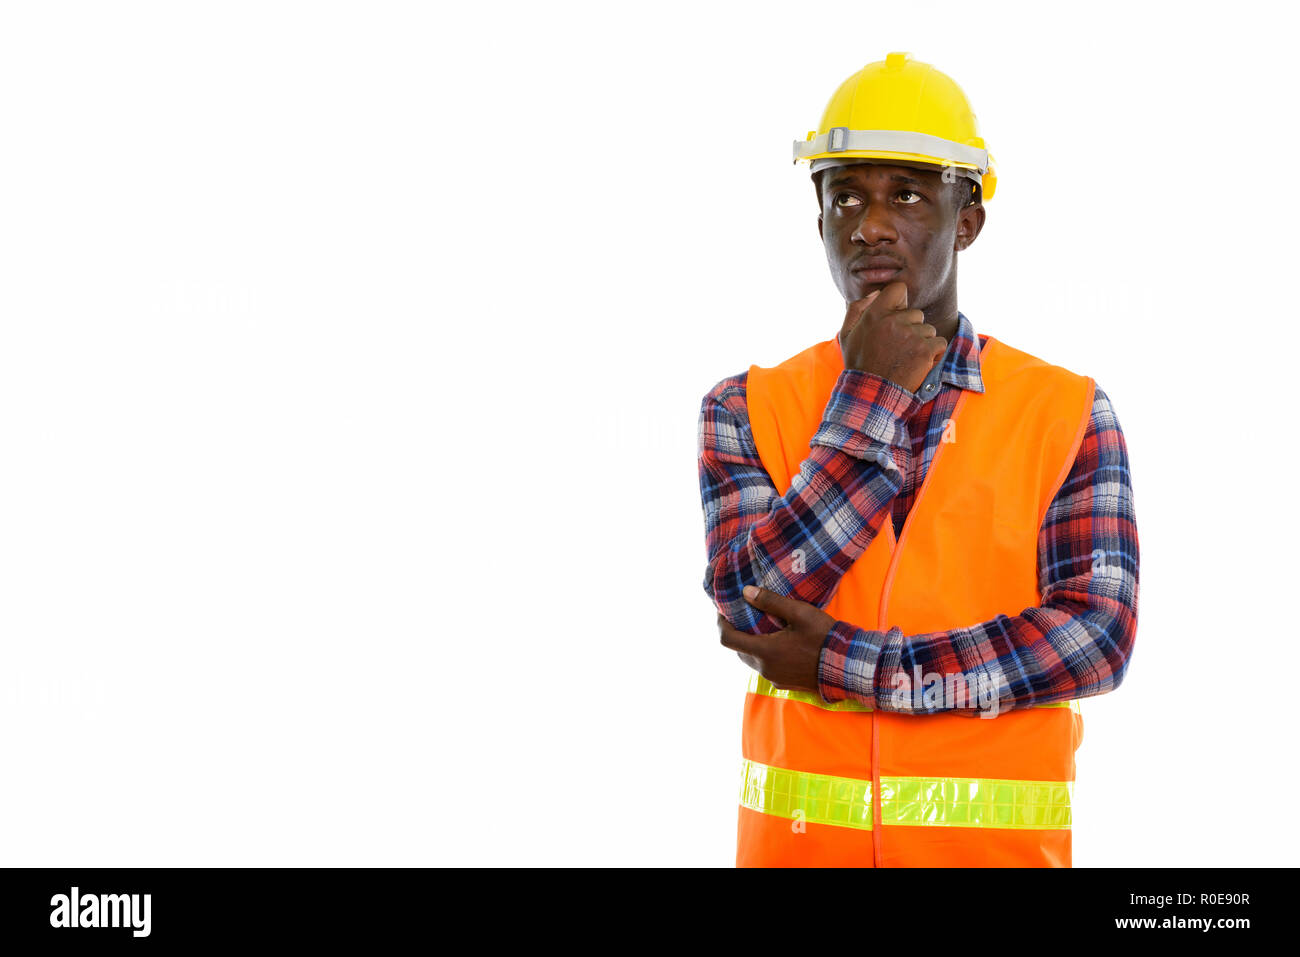 Foto de estudio de los jóvenes negros hombre africano, trabajador de la construcción parece Foto de stock